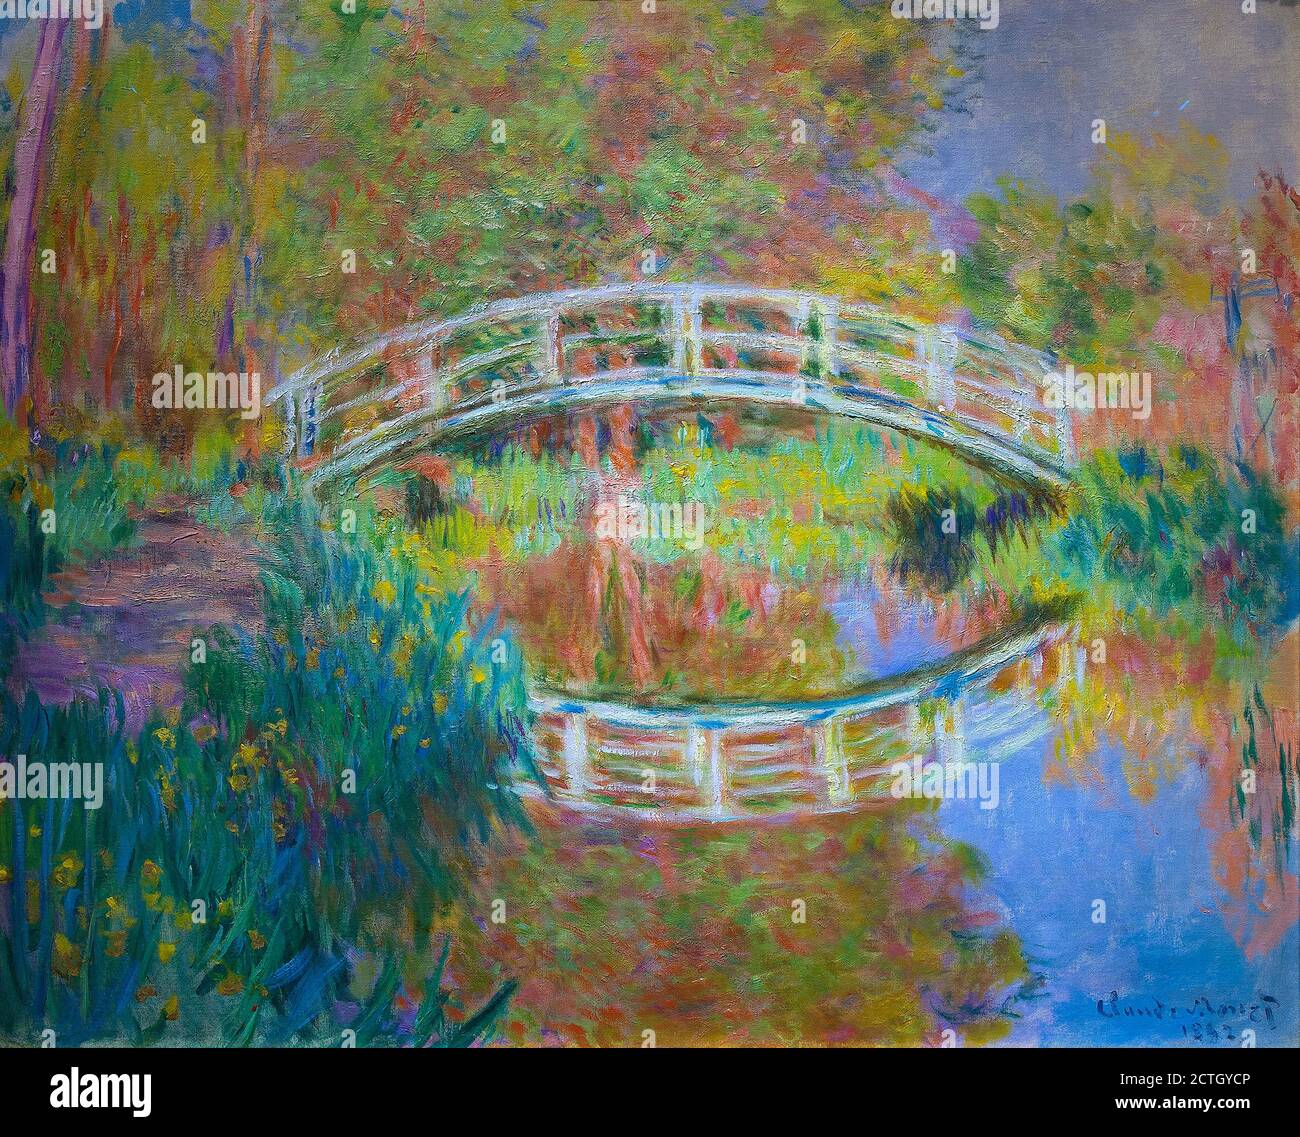 Claude Monet 1840-1926. Le pont japonais,1895. Peinture à l'huile sur toile cm 78,7 x 97,8. Banque D'Images